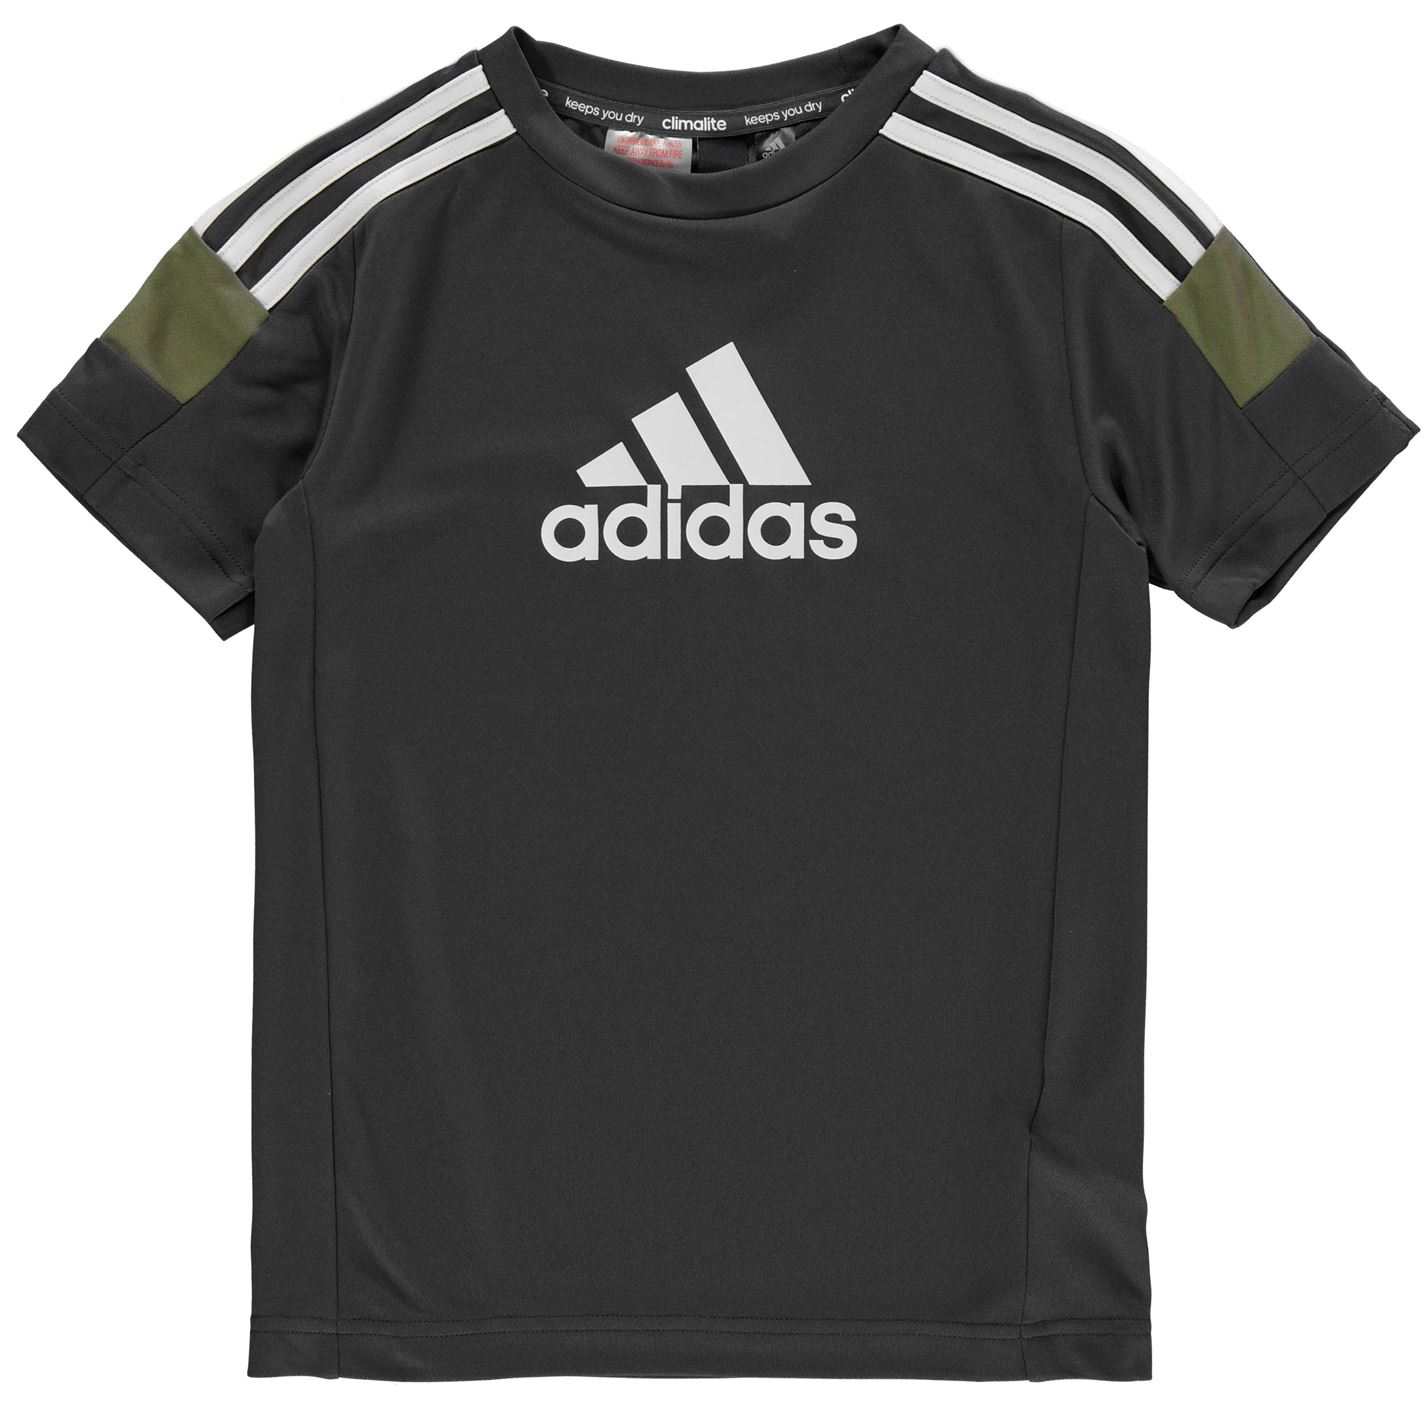 Adidas Boy's Tri-Coloured T-Shirt